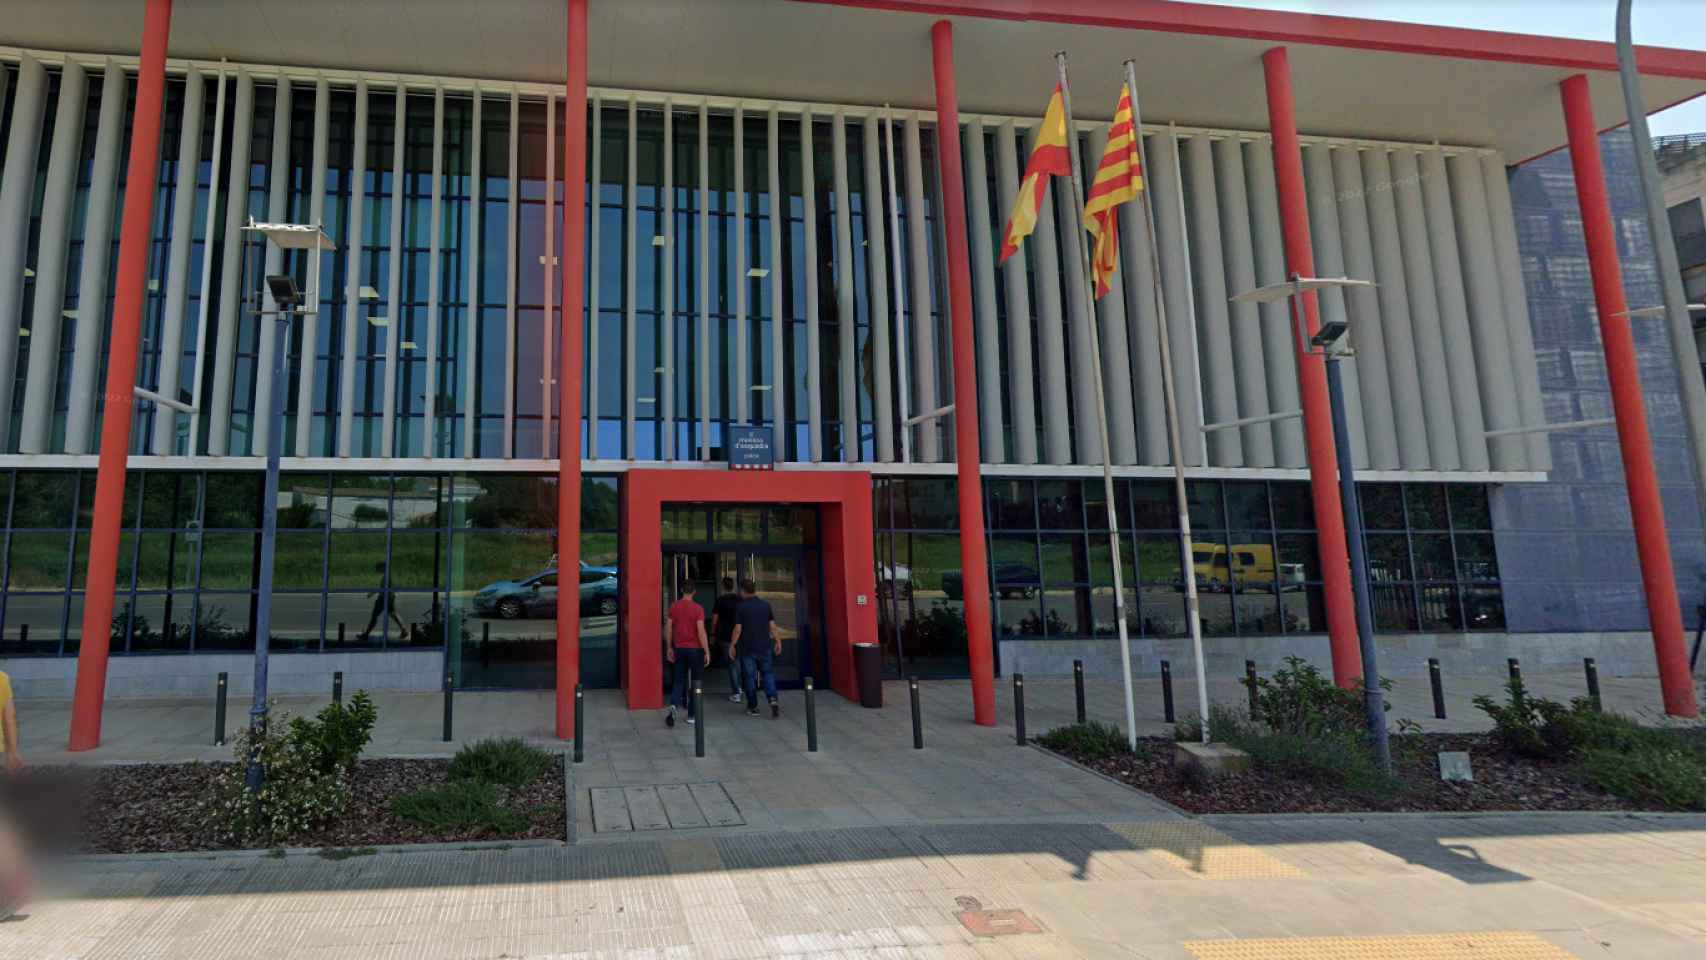 Comisaría de los Mossos d'Esquadra en Lleida